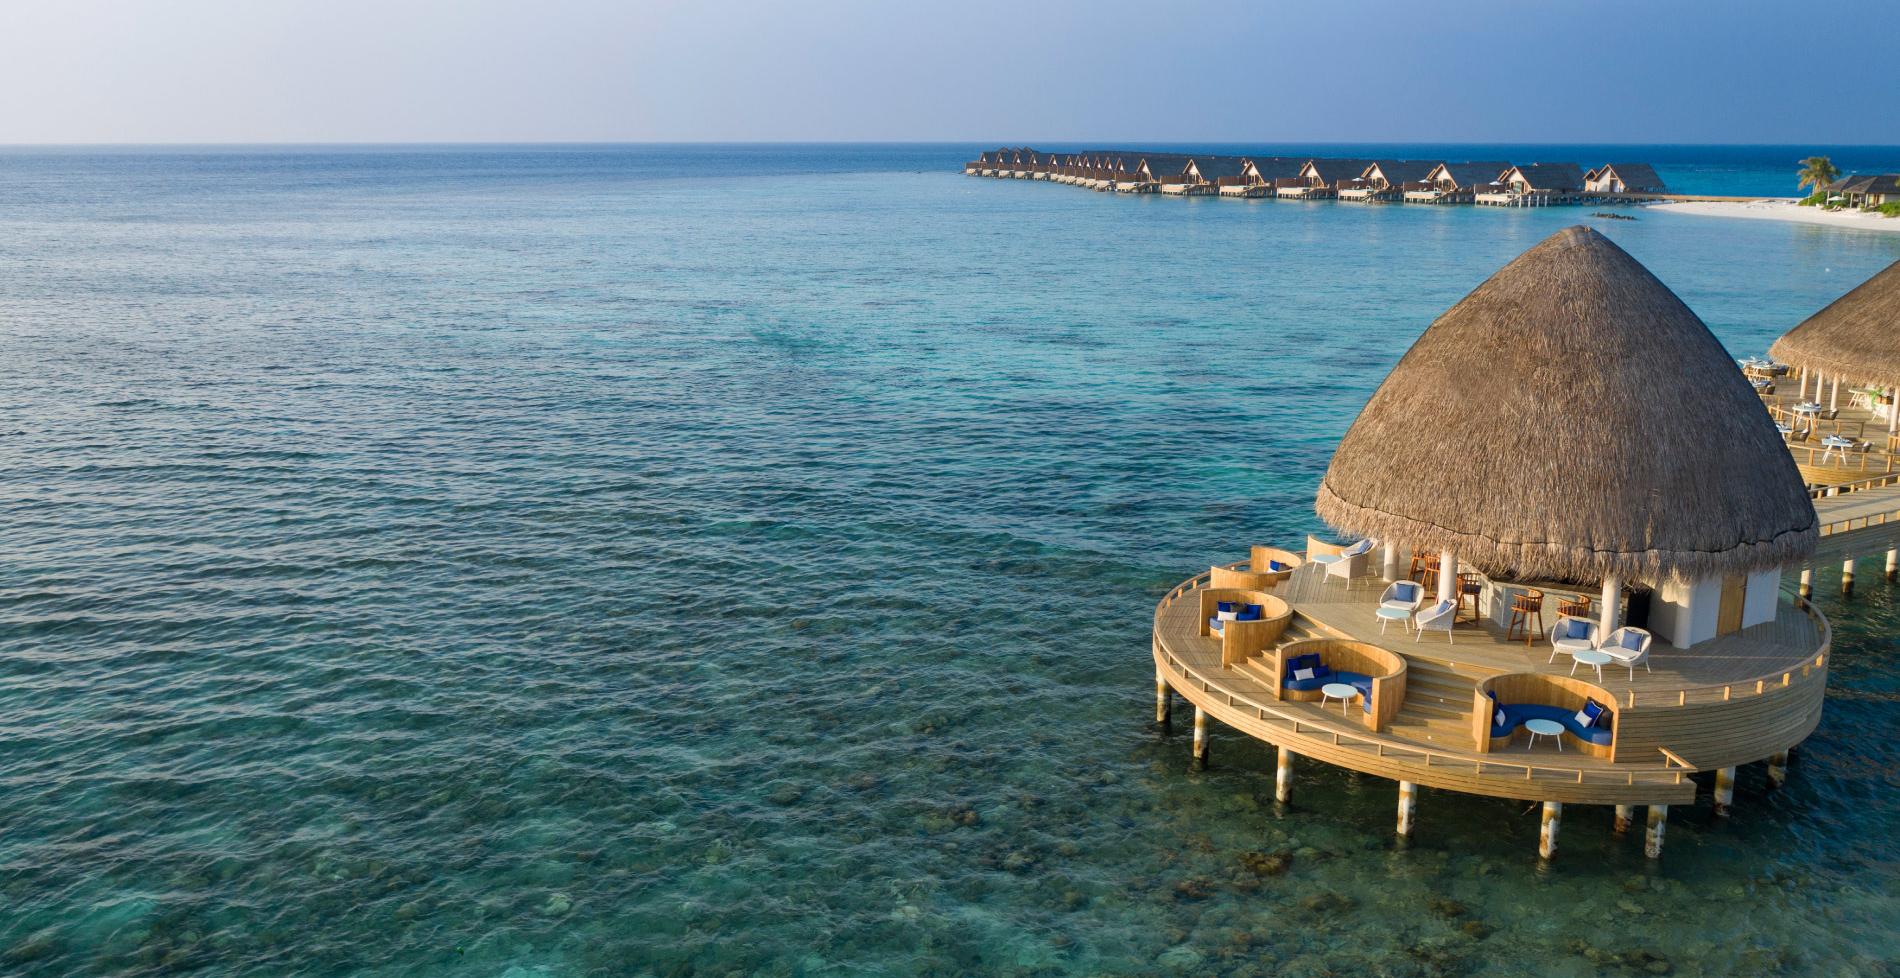 马尔代夫卡尼富士岛度假酒店预订及价格查询,Atmosphere kanifushi maldives_八大洲旅游